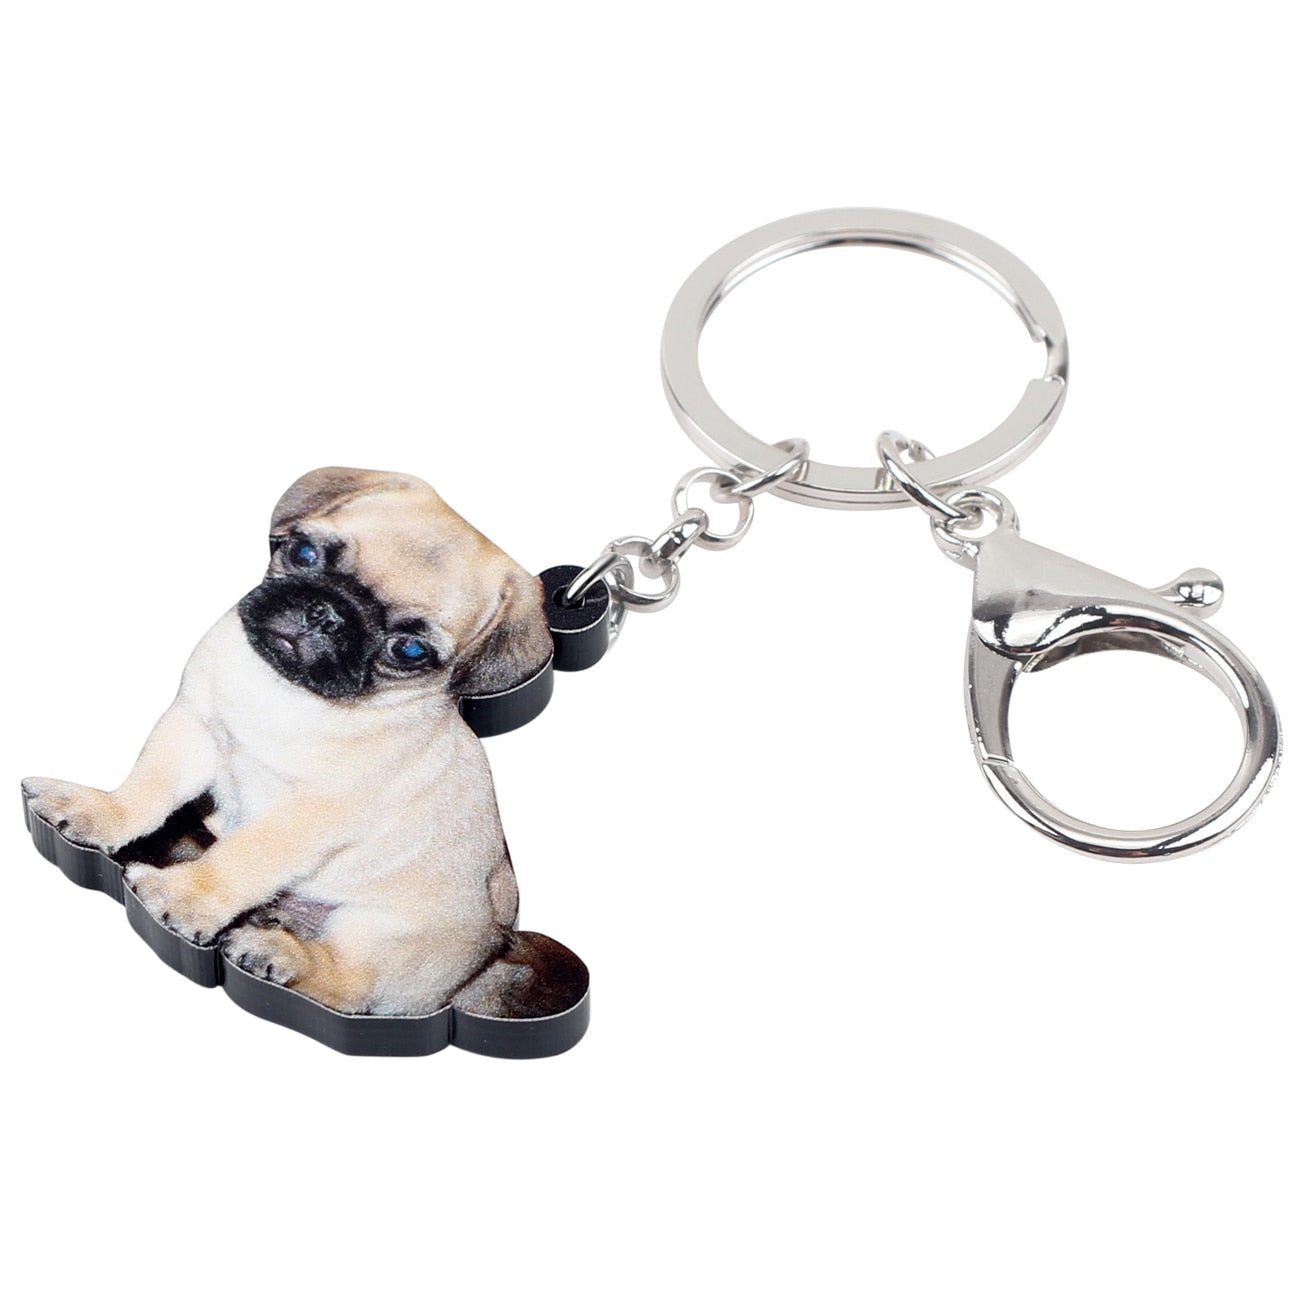 Acrylic Dog Keychains Holder